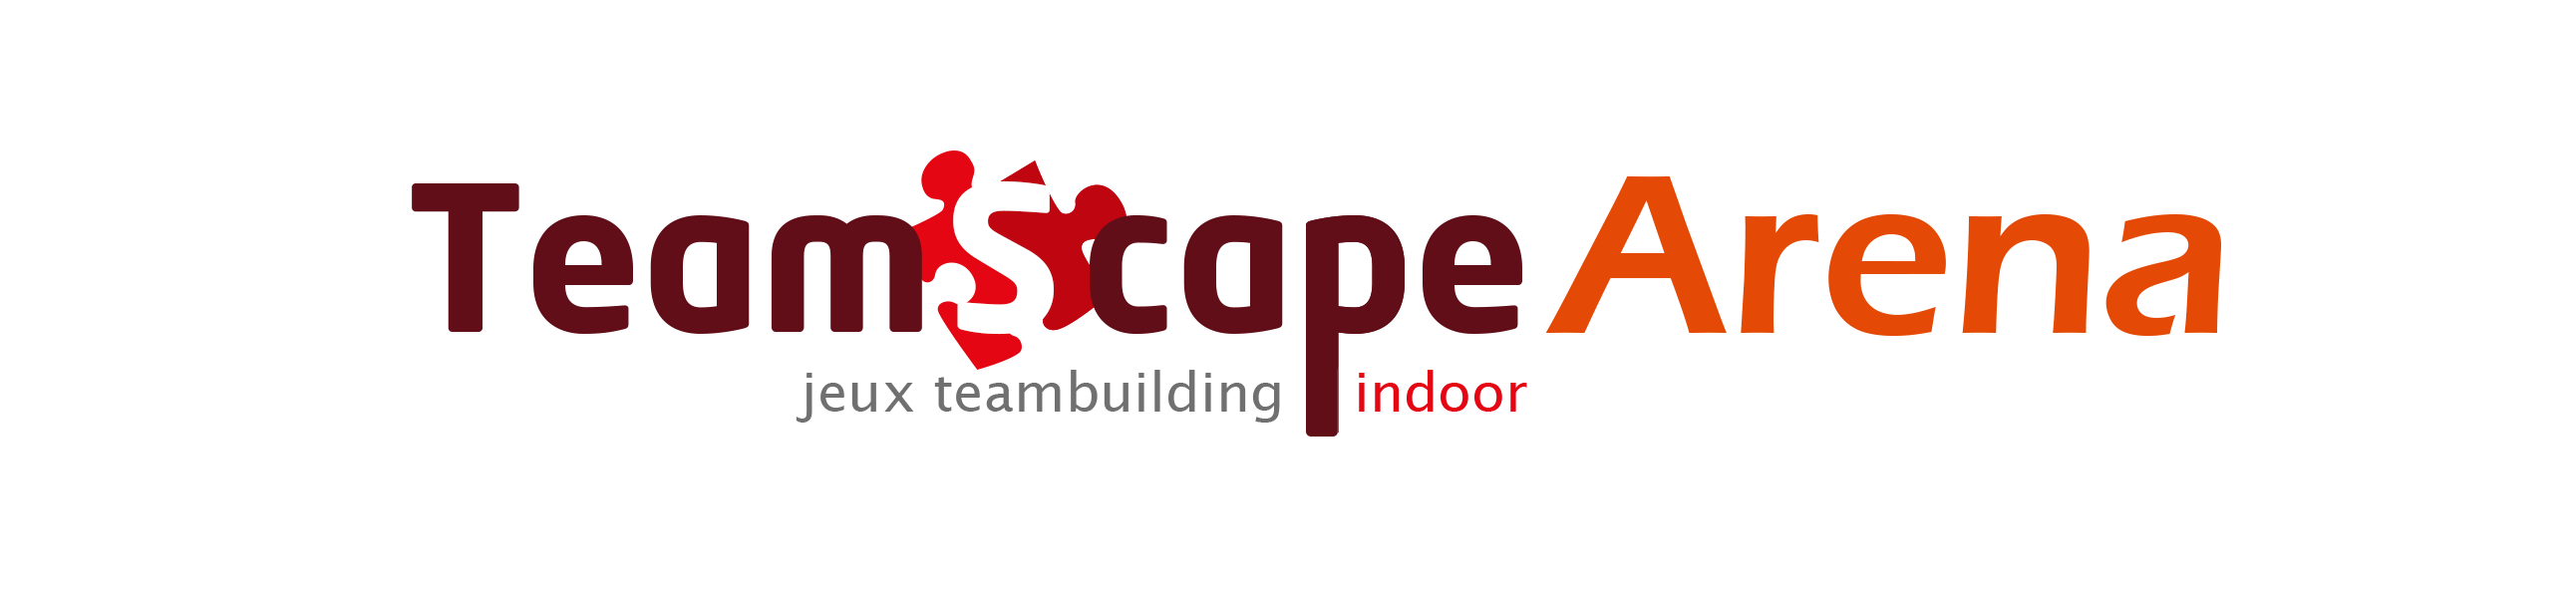 Teamscape 360 : Activité teambuilding cohésion en intérieur indoor jeux de société entreprise collectivité